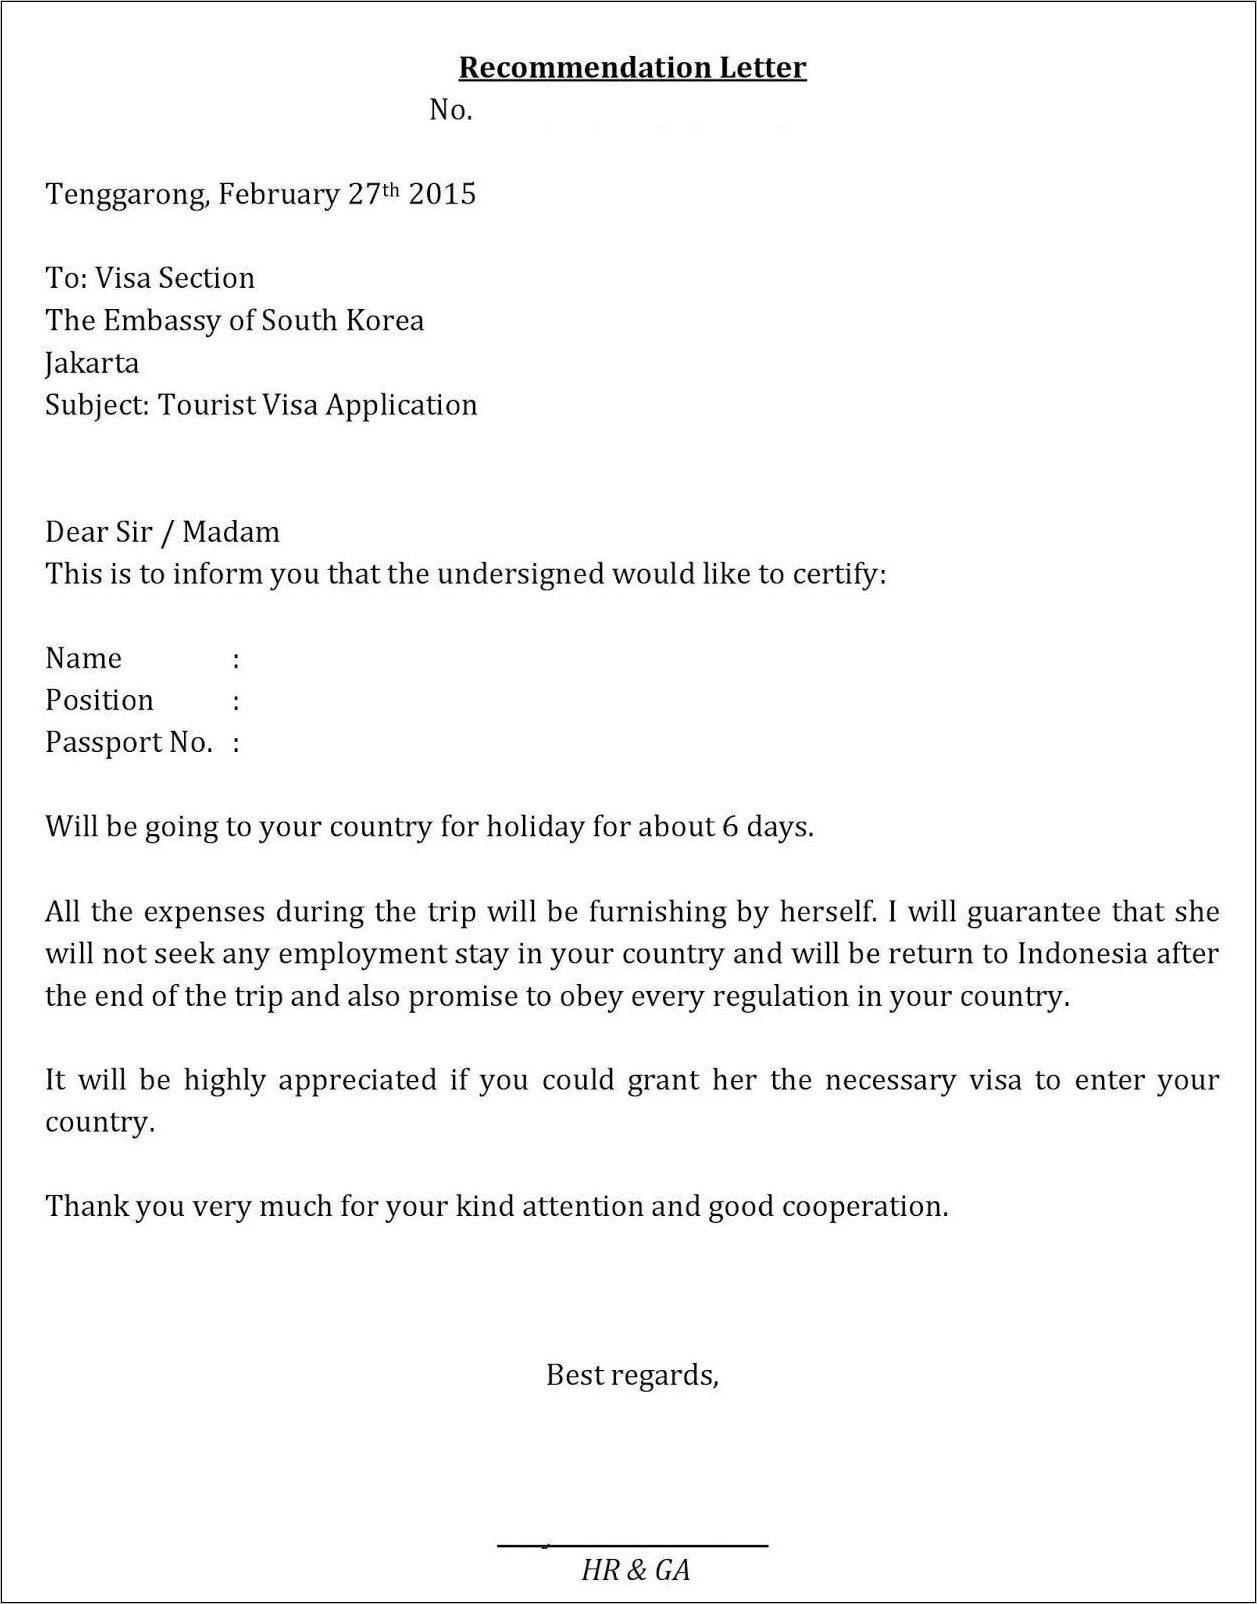 Contoh Surat Keterangan Kerja Pns Untuk Visa Korea